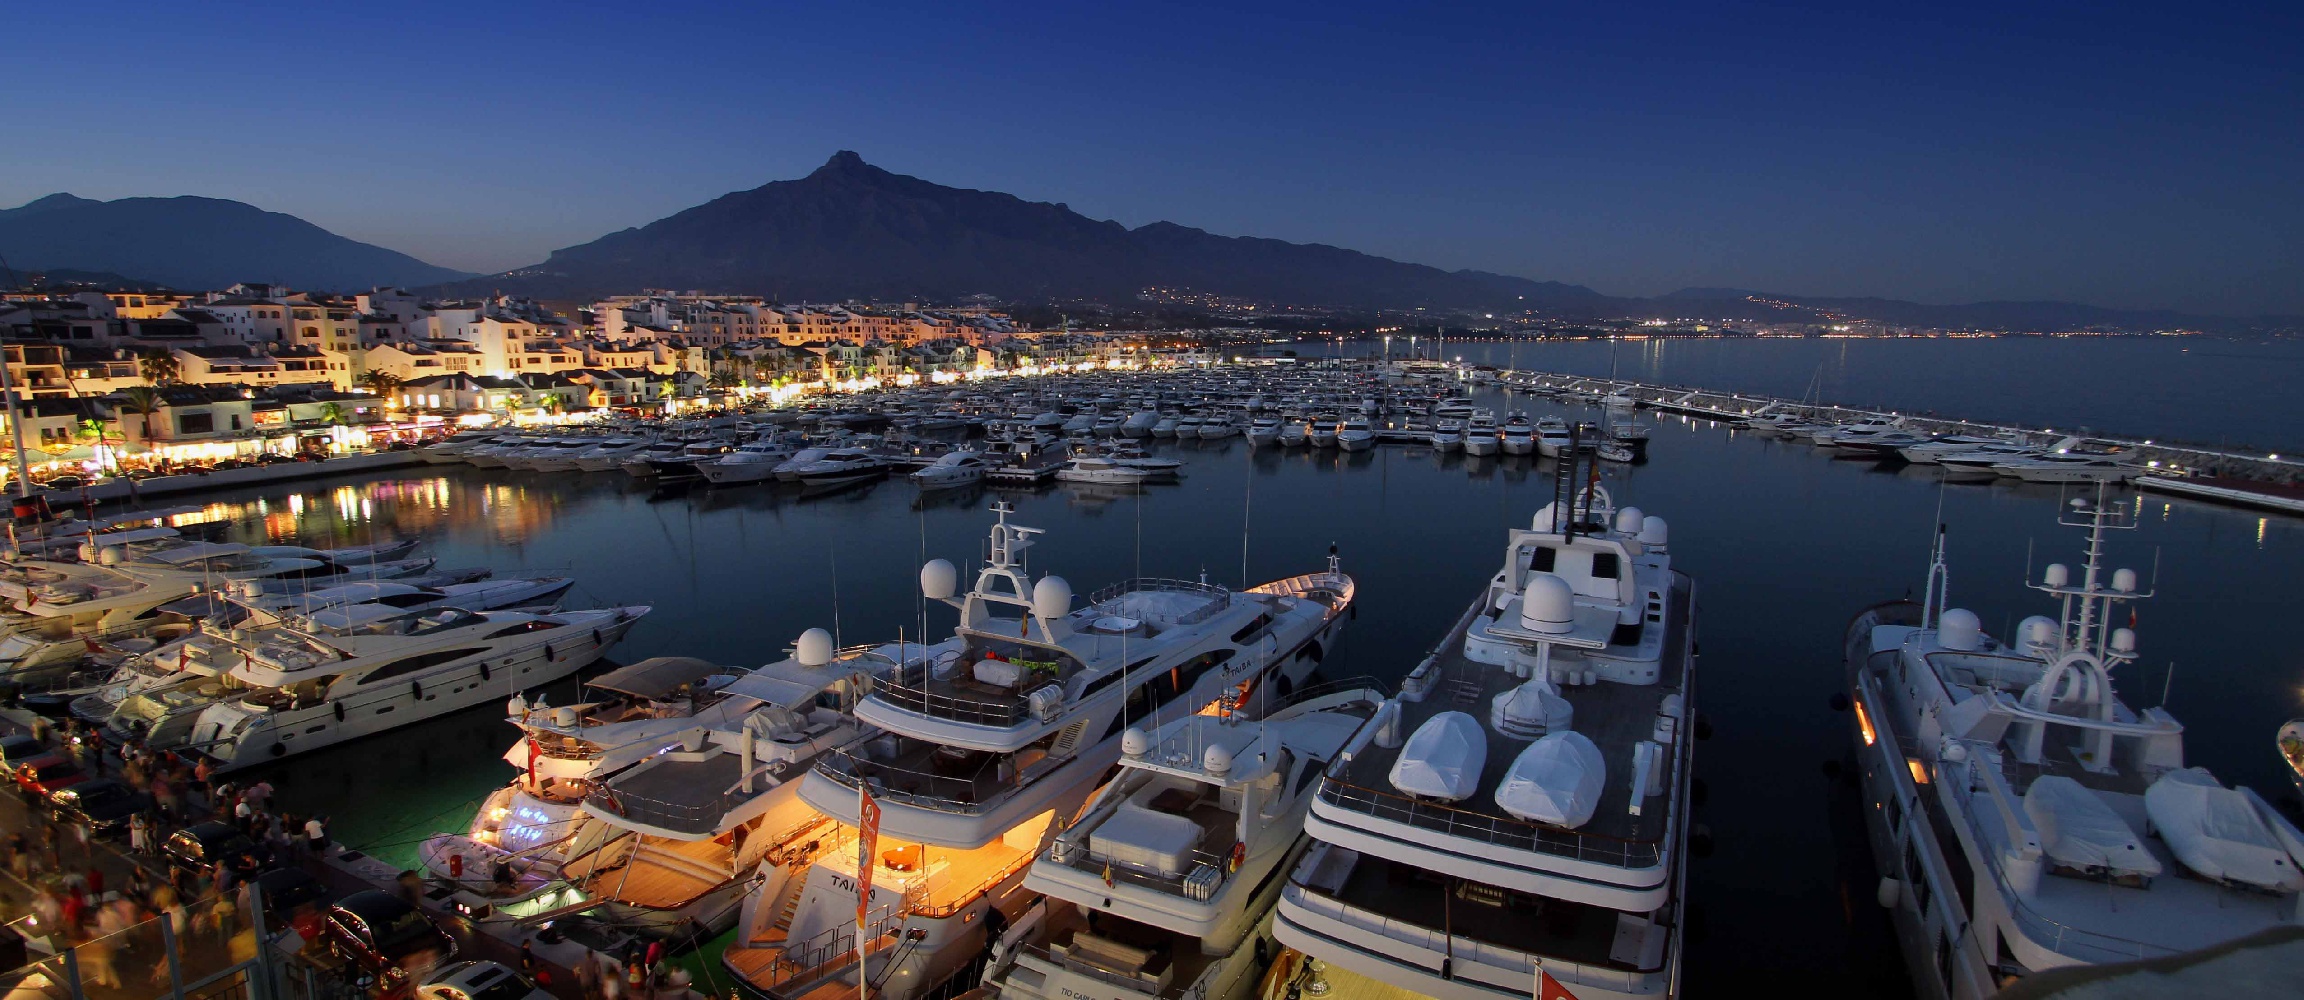 Los puertos deportivos andaluces estudian aplicar medidas favorables al medioambiente